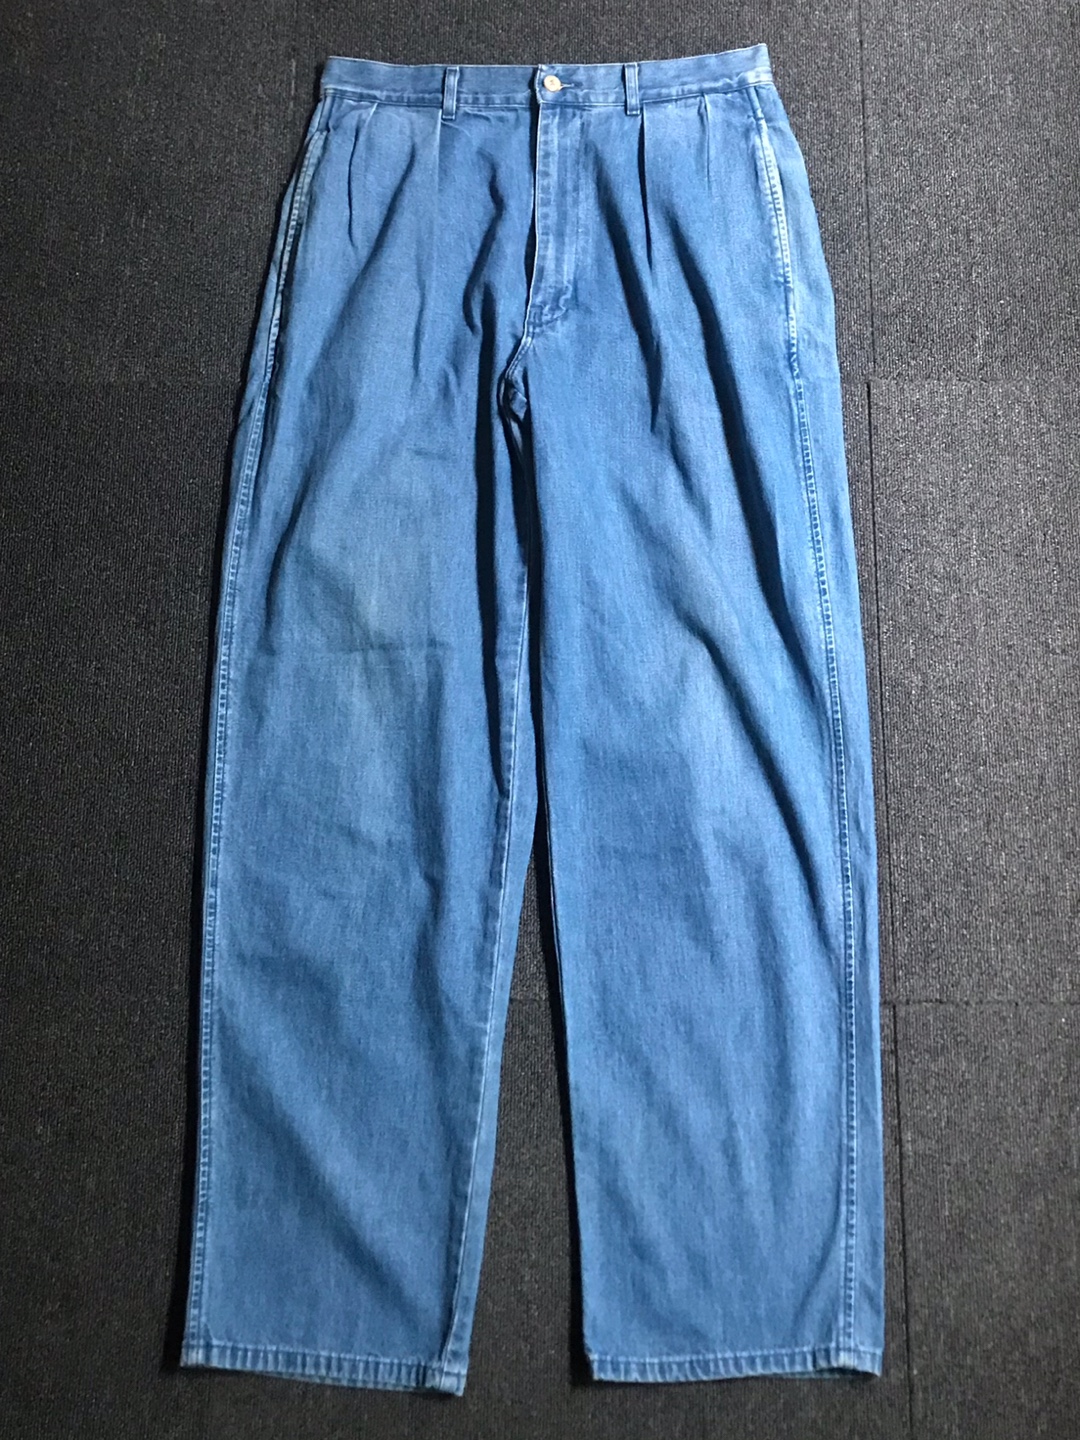 90s Polo RL denim 2tuck pants USA made (32/30 size,